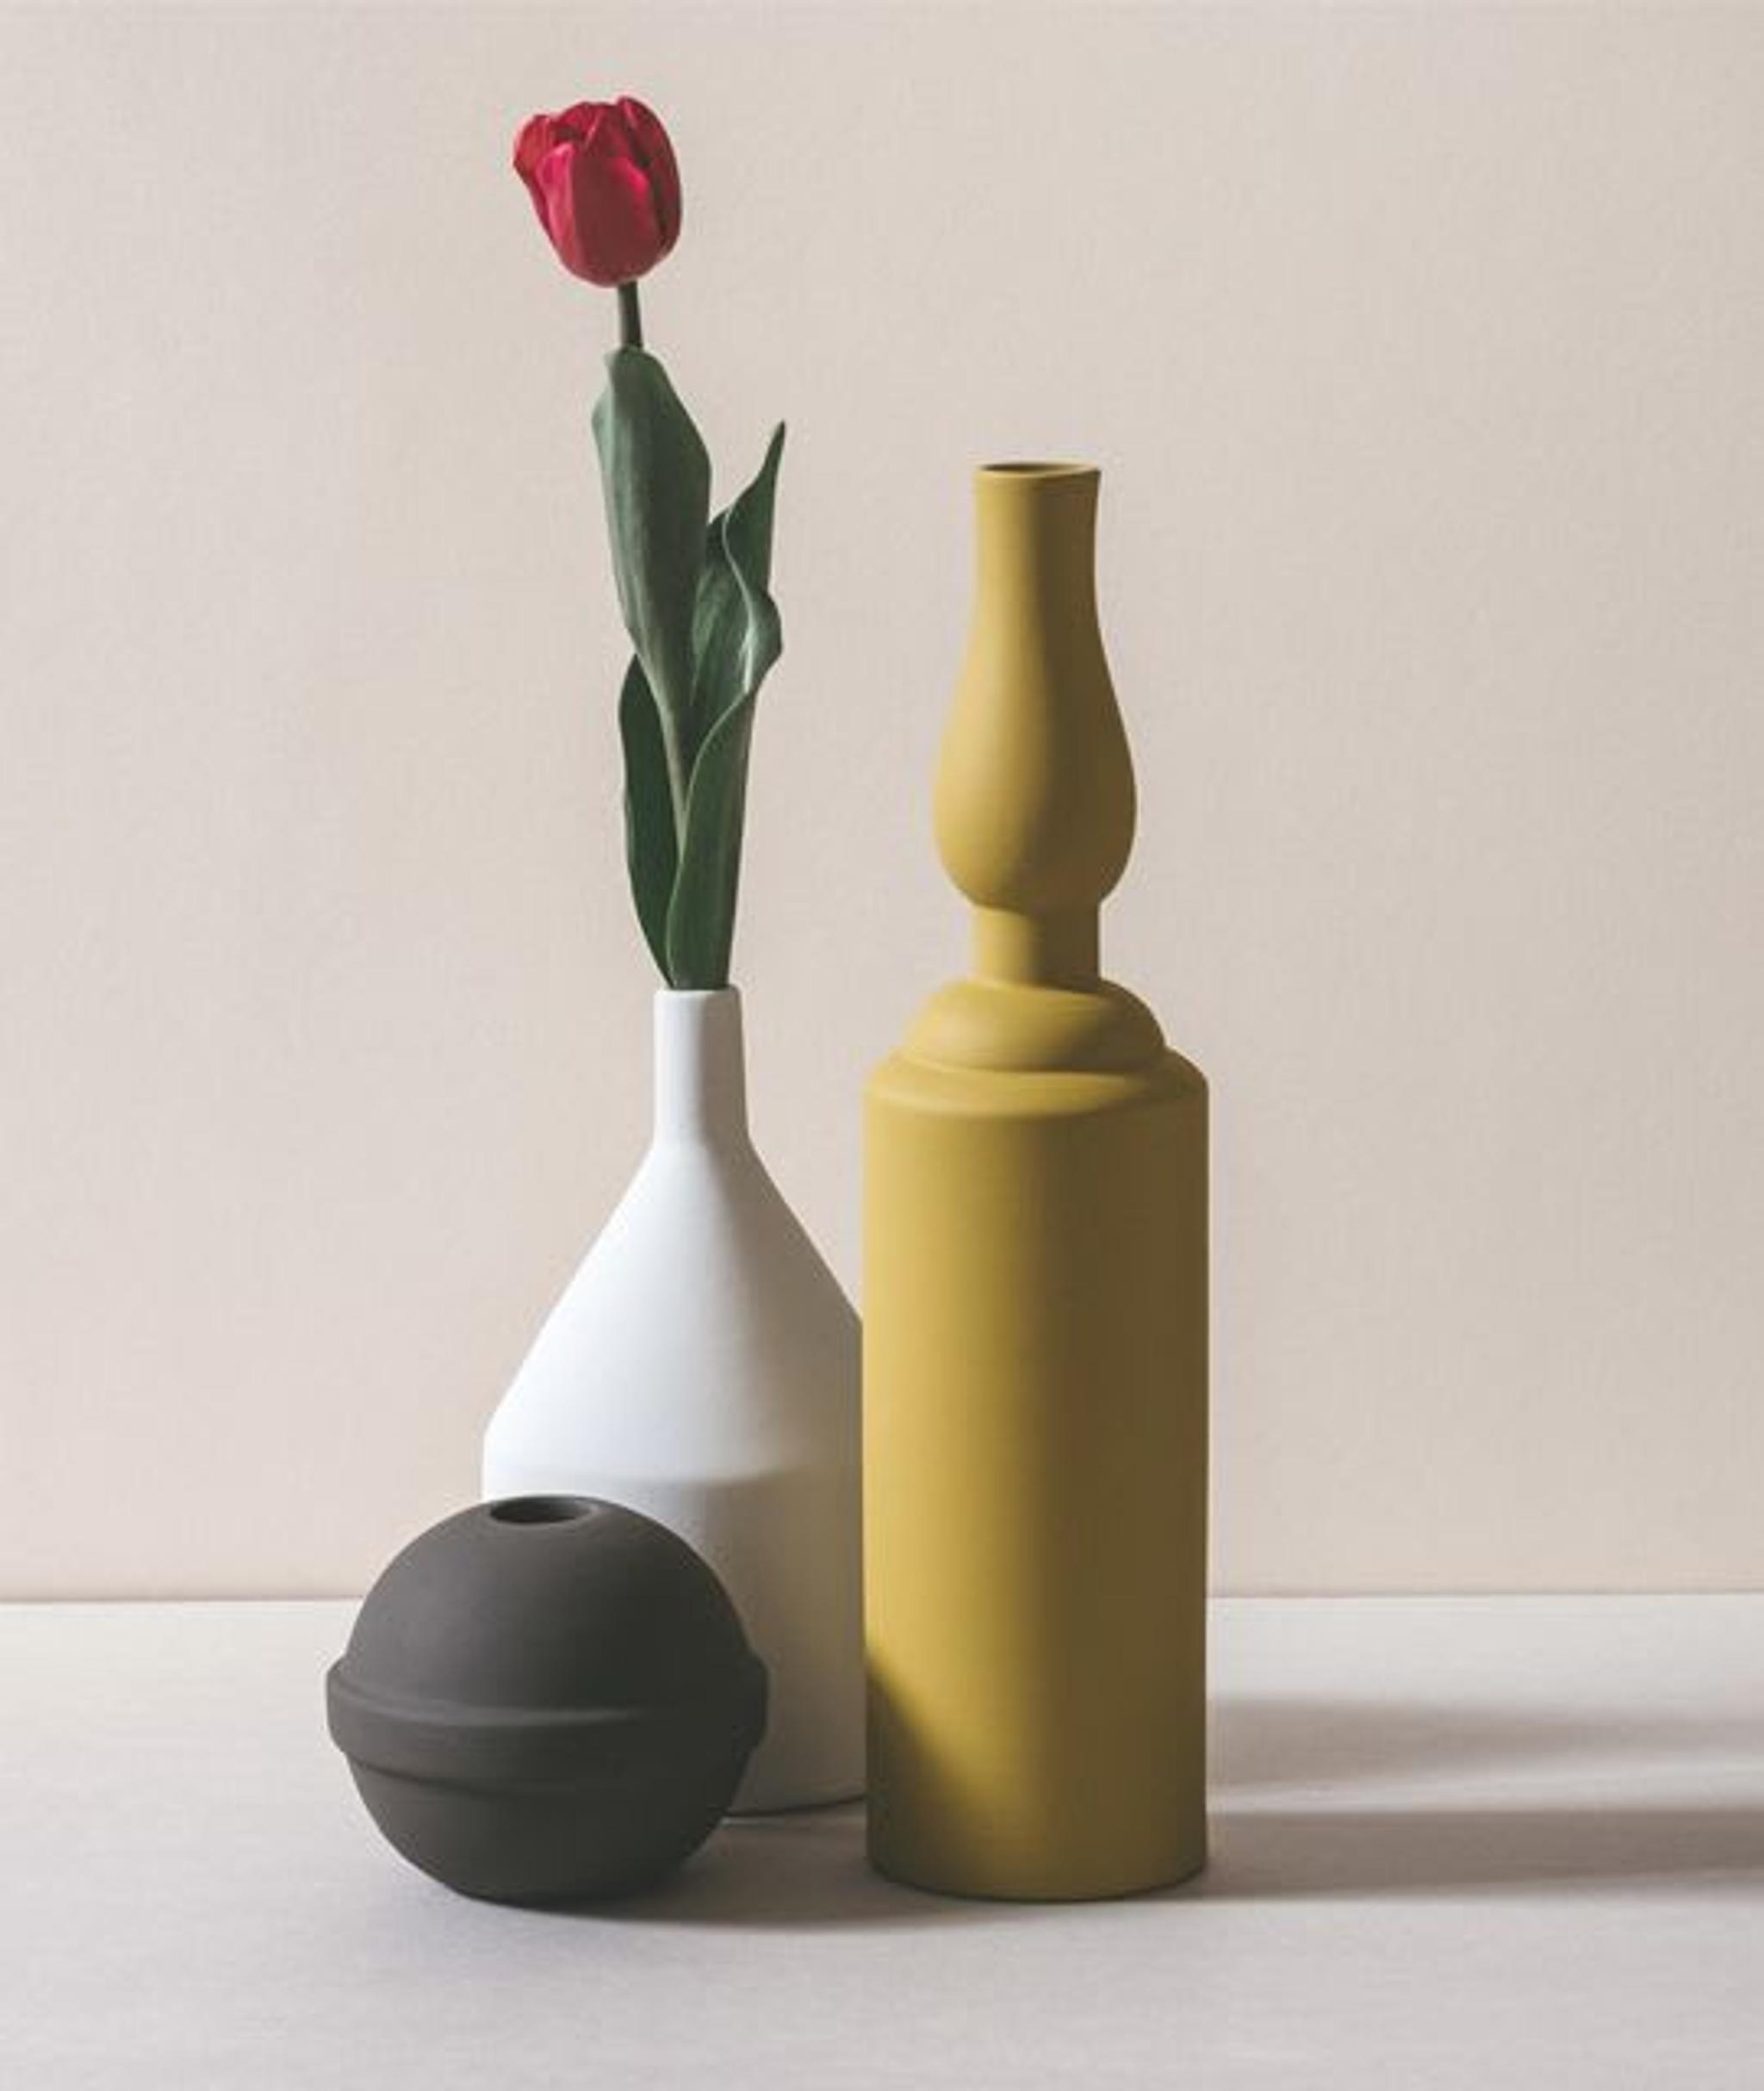 Natura Morta 3 - Vase Set #2 by Sonia Pedrazzini